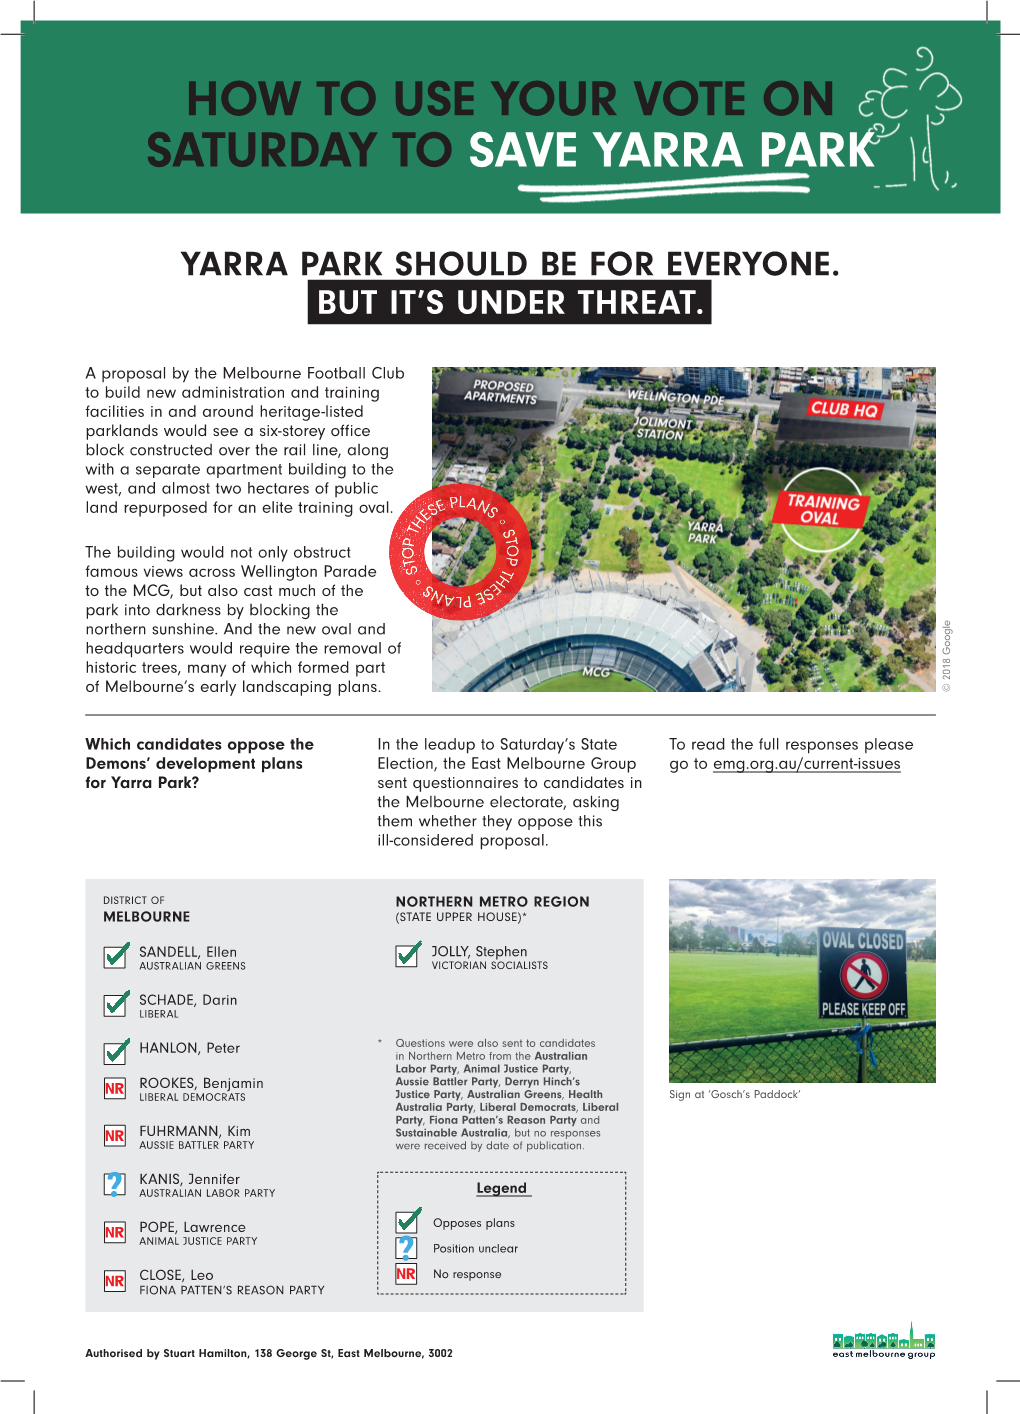 East Melbourne Group Yarra Park Election Flyer